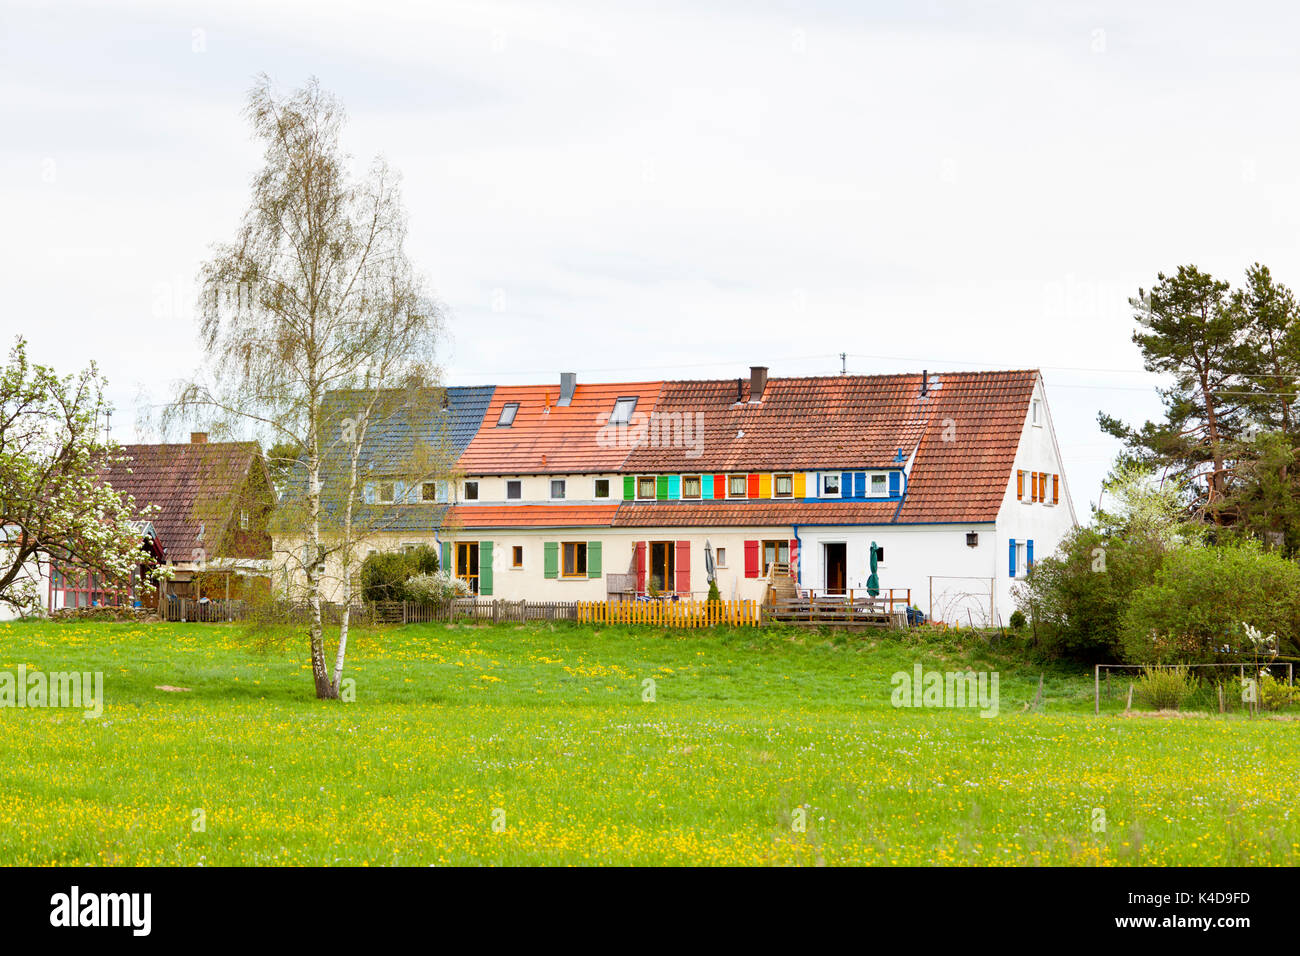 Une vieille maison derrière une prairie aux volets colorés sur les fenêtres dans le sud de l'Allemagne. Banque D'Images